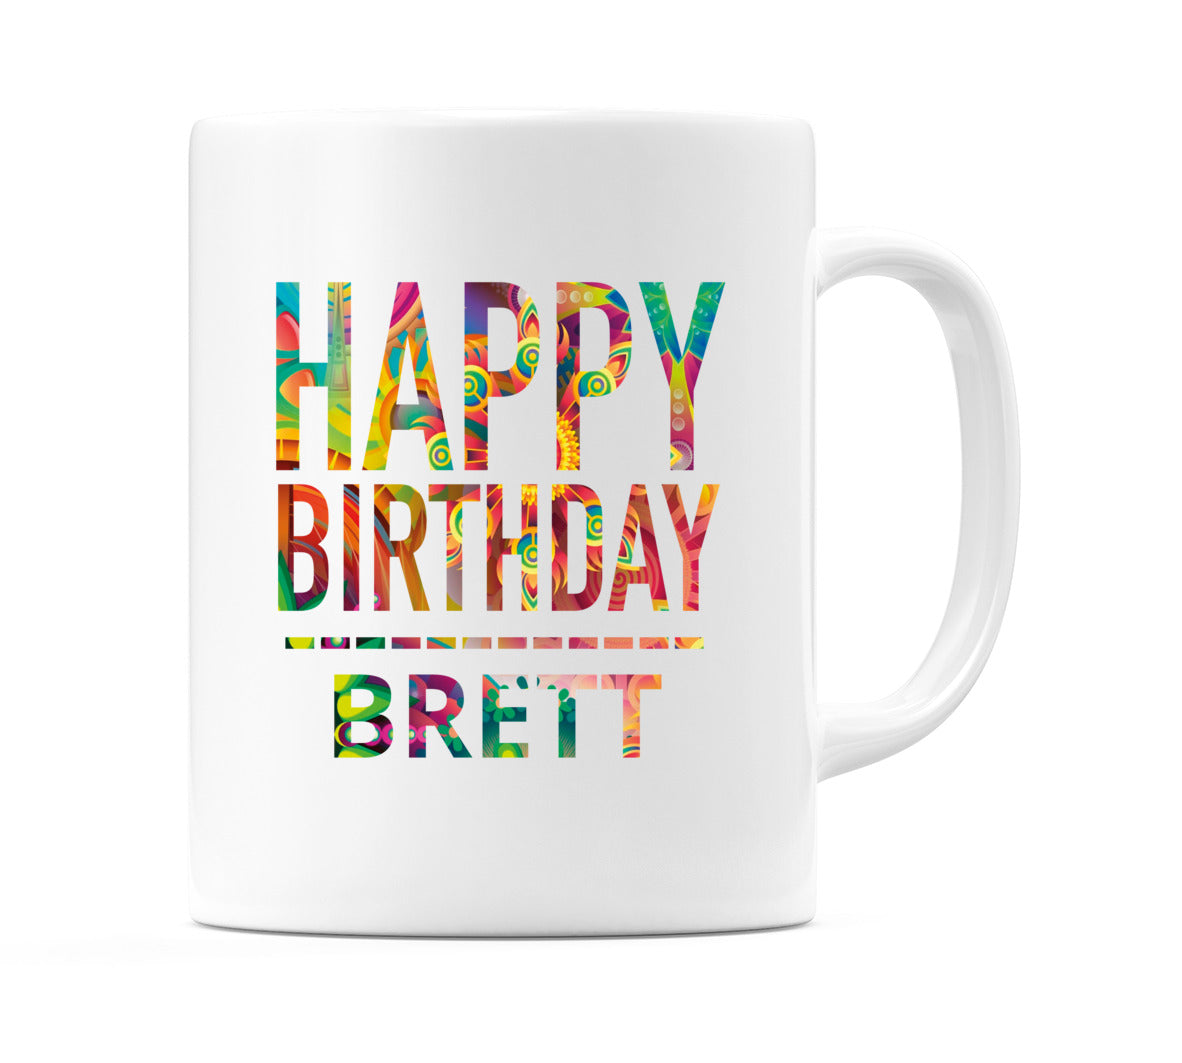 Happy Birthday Brett (Tie Dye Effect) Mug Cup by WeDoMugs